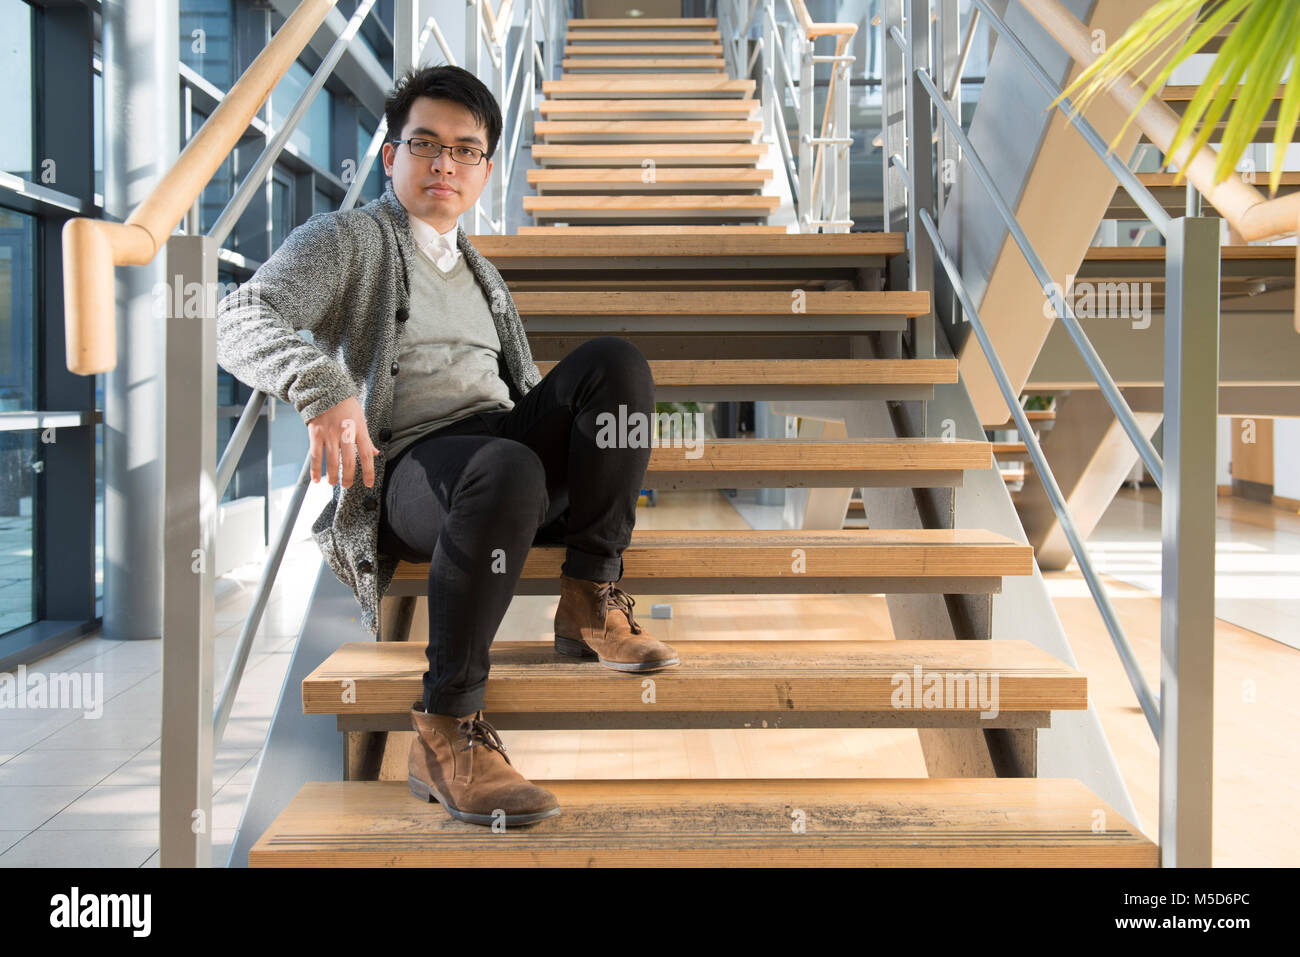 Einen jungen ausländischen Studenten steht rund um die College Campus für Porträts Stockfoto